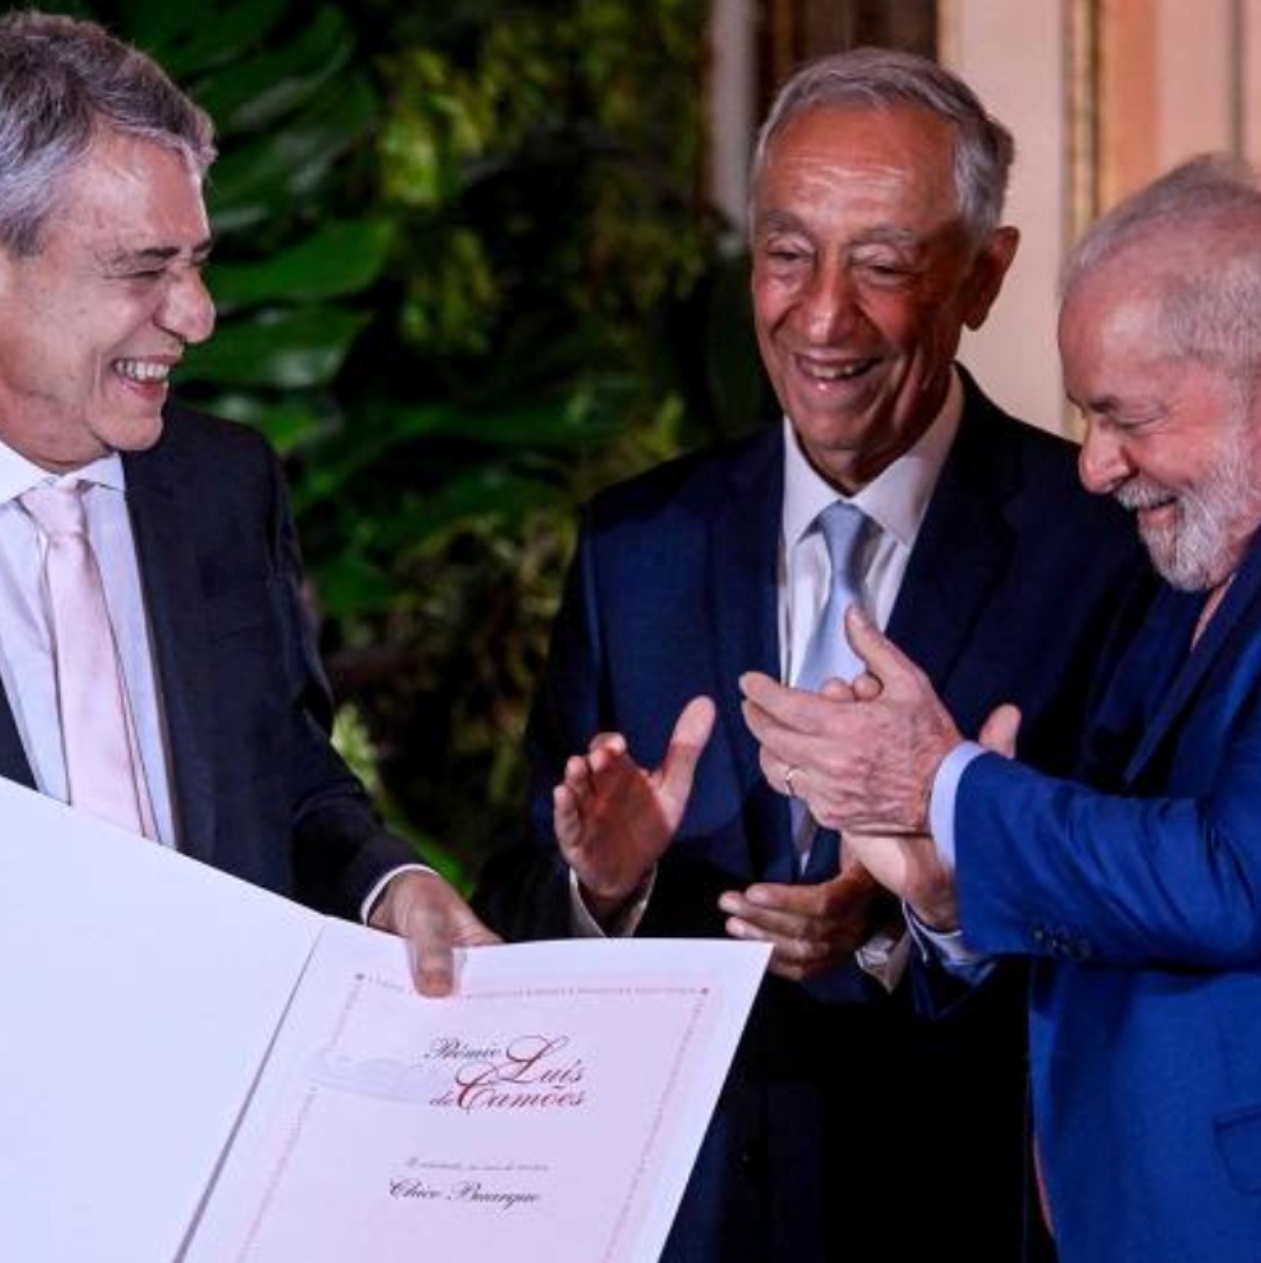 Museu da Língua Portuguesa - Parabéns a Chico Buarque pelo Prêmio